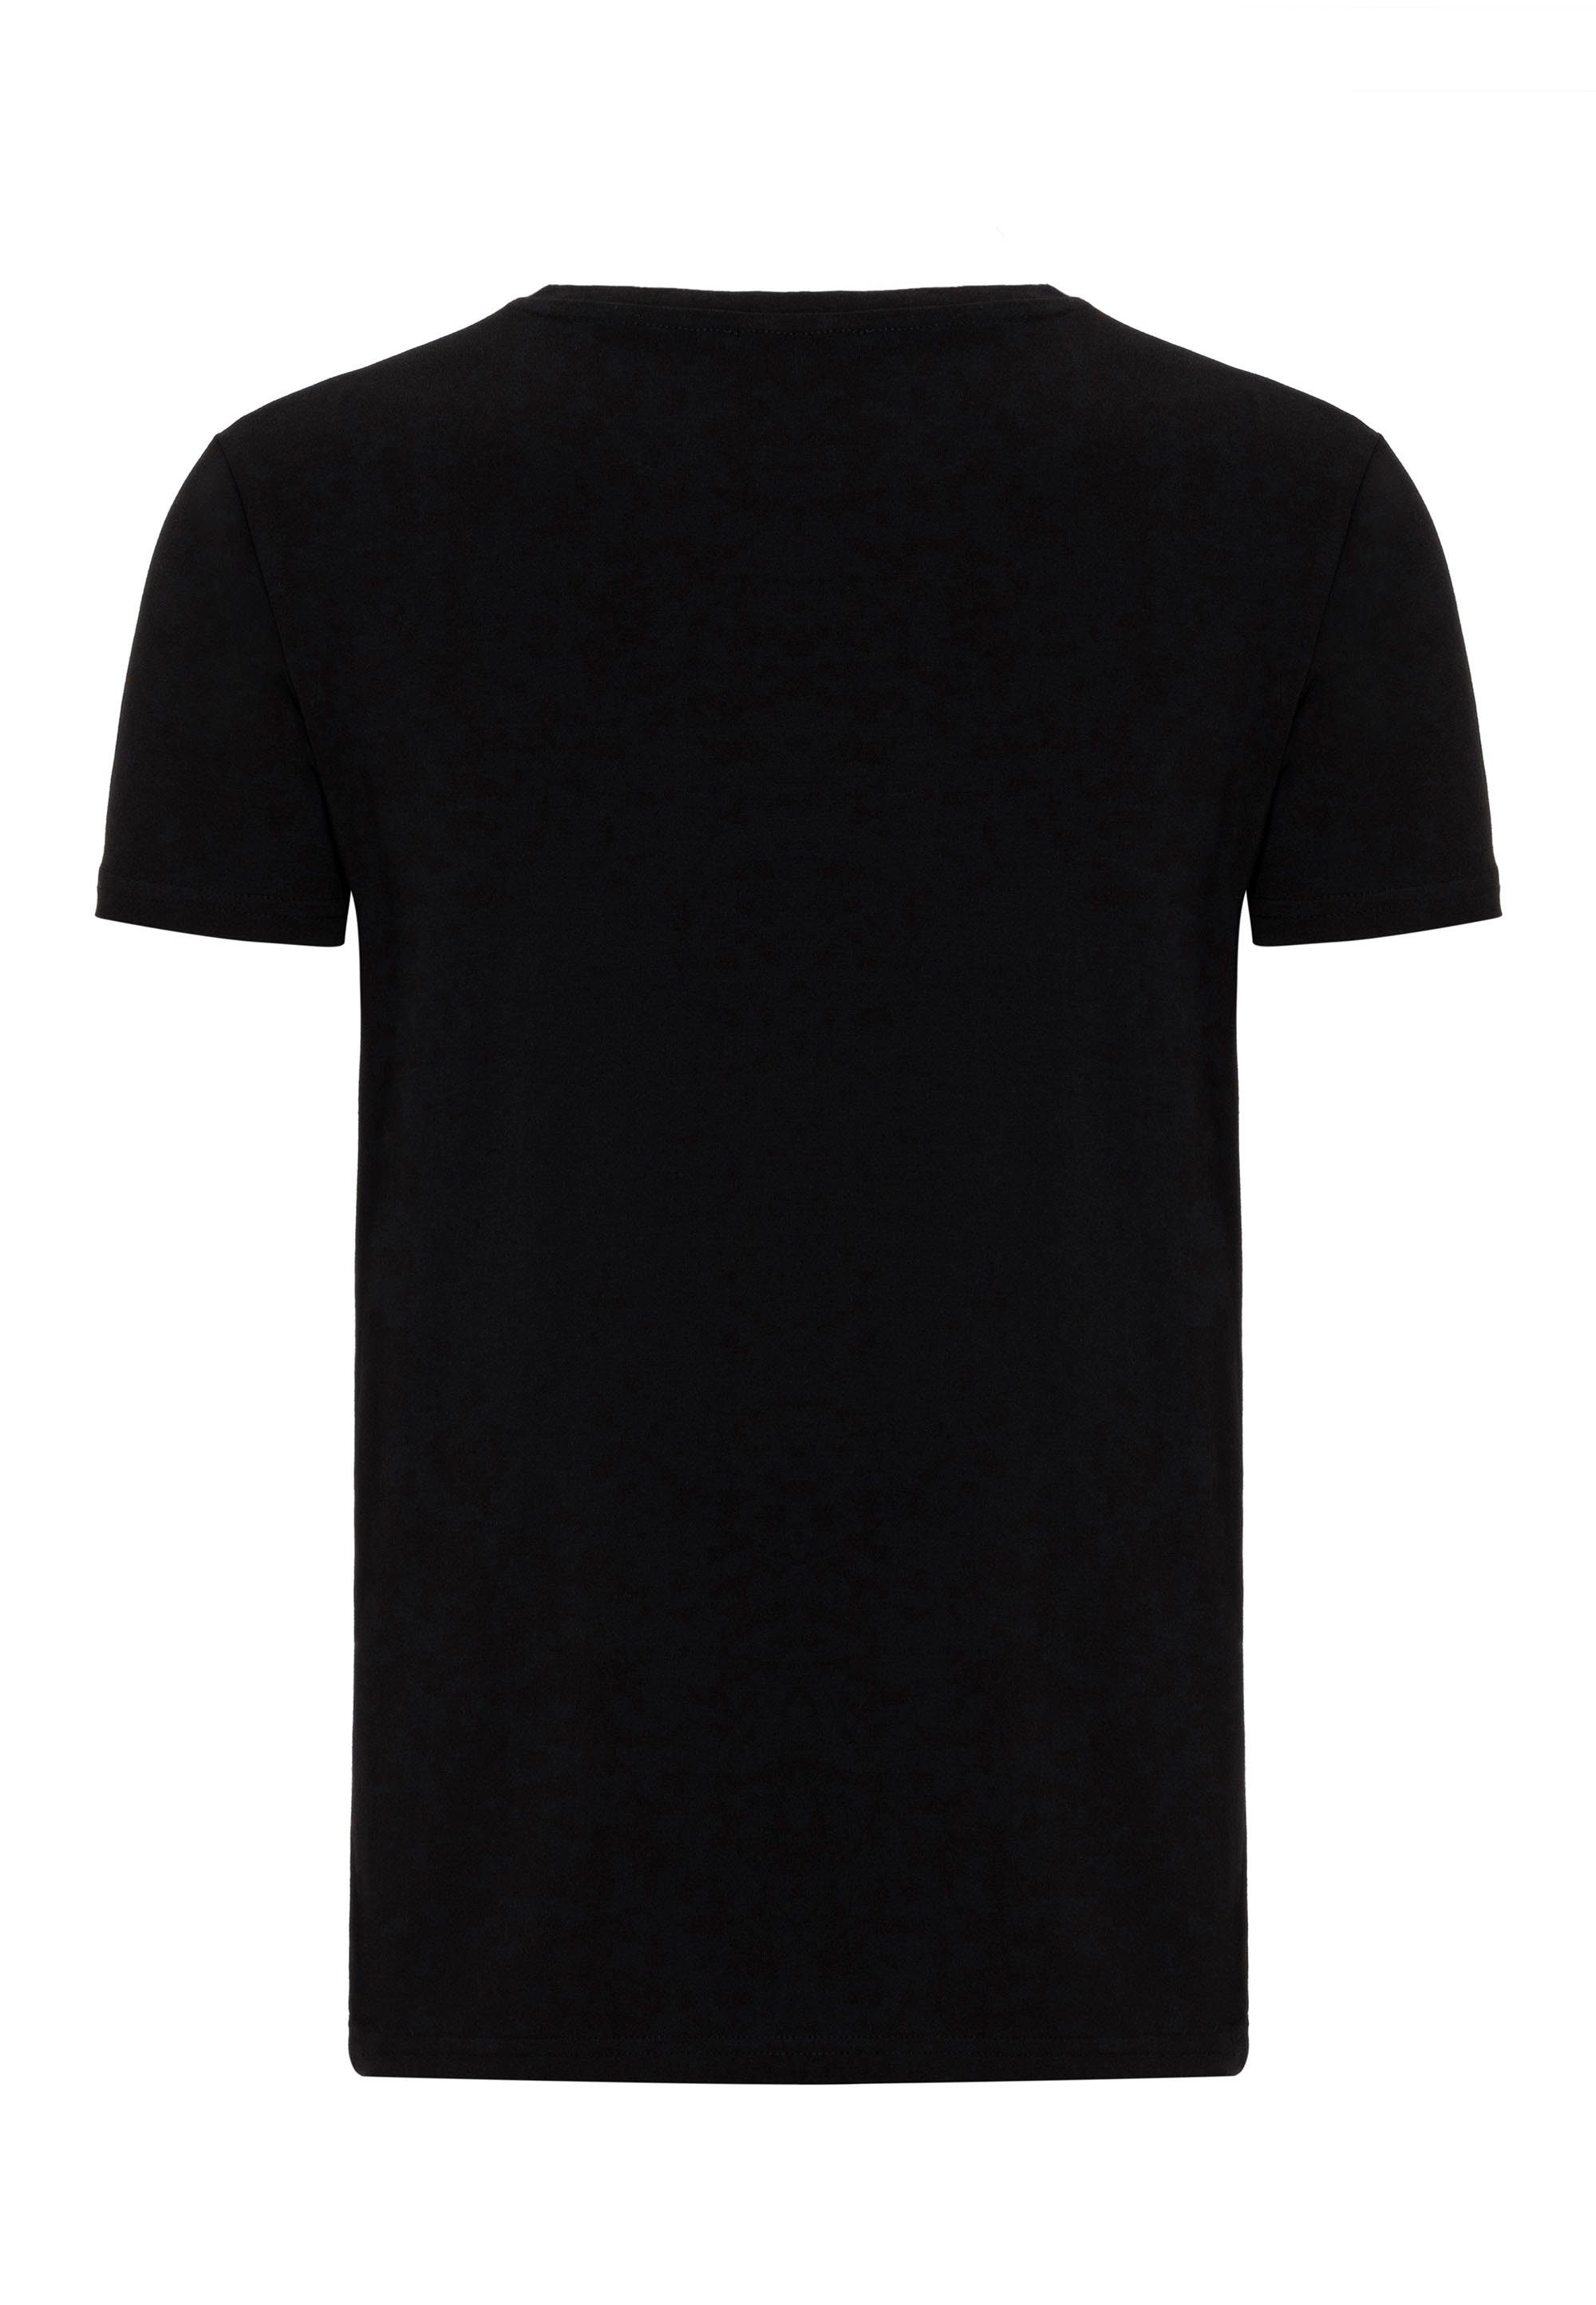 Dayton RedBridge T-Shirt in schwarz klassischem Design